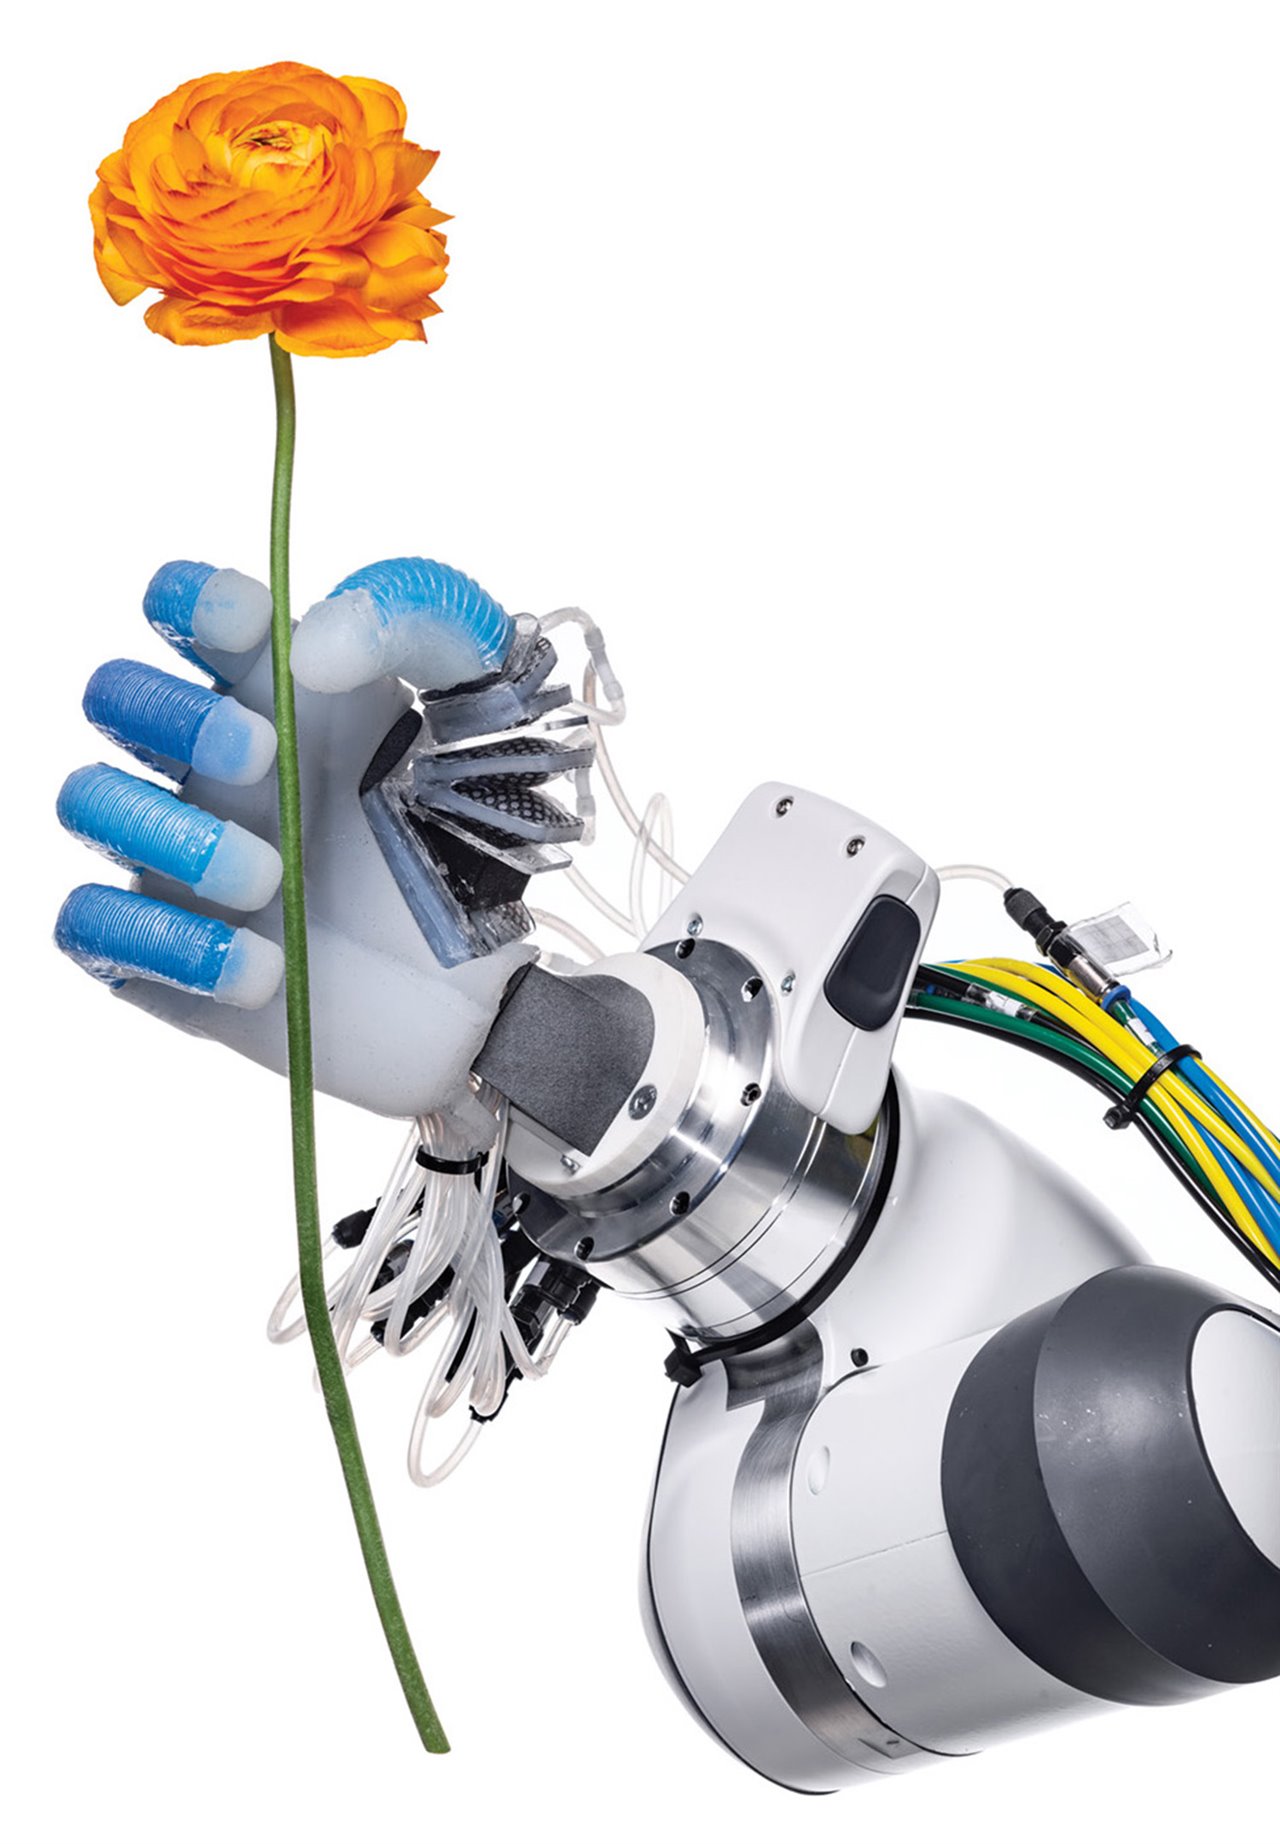 Ejerciendo un agarre firme pero delicado, esta mano robótica  del Laboratorio de Robótica y Biología de la Universidad Técnica de Berlín toma una flor con sus dedos neumáticos. Con los últimos avances, los robots están más cerca que nunca de reproducir habilidades humanas.